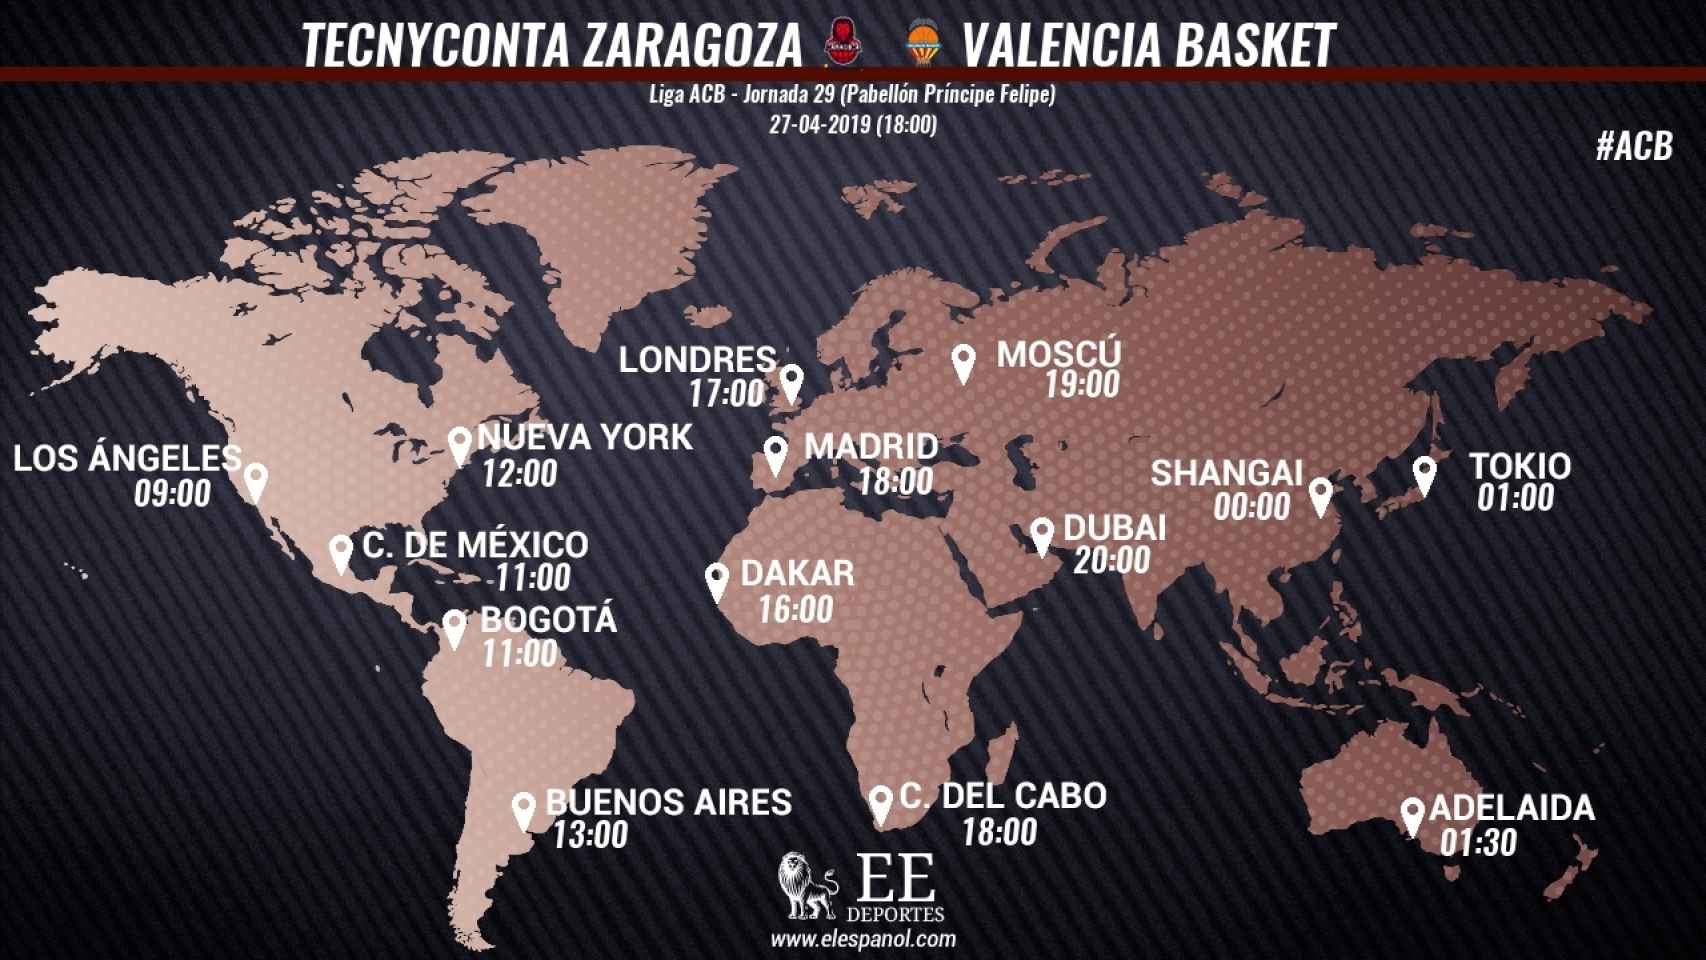 Horario Tecnyconta Zaragoza - Valencia Basket